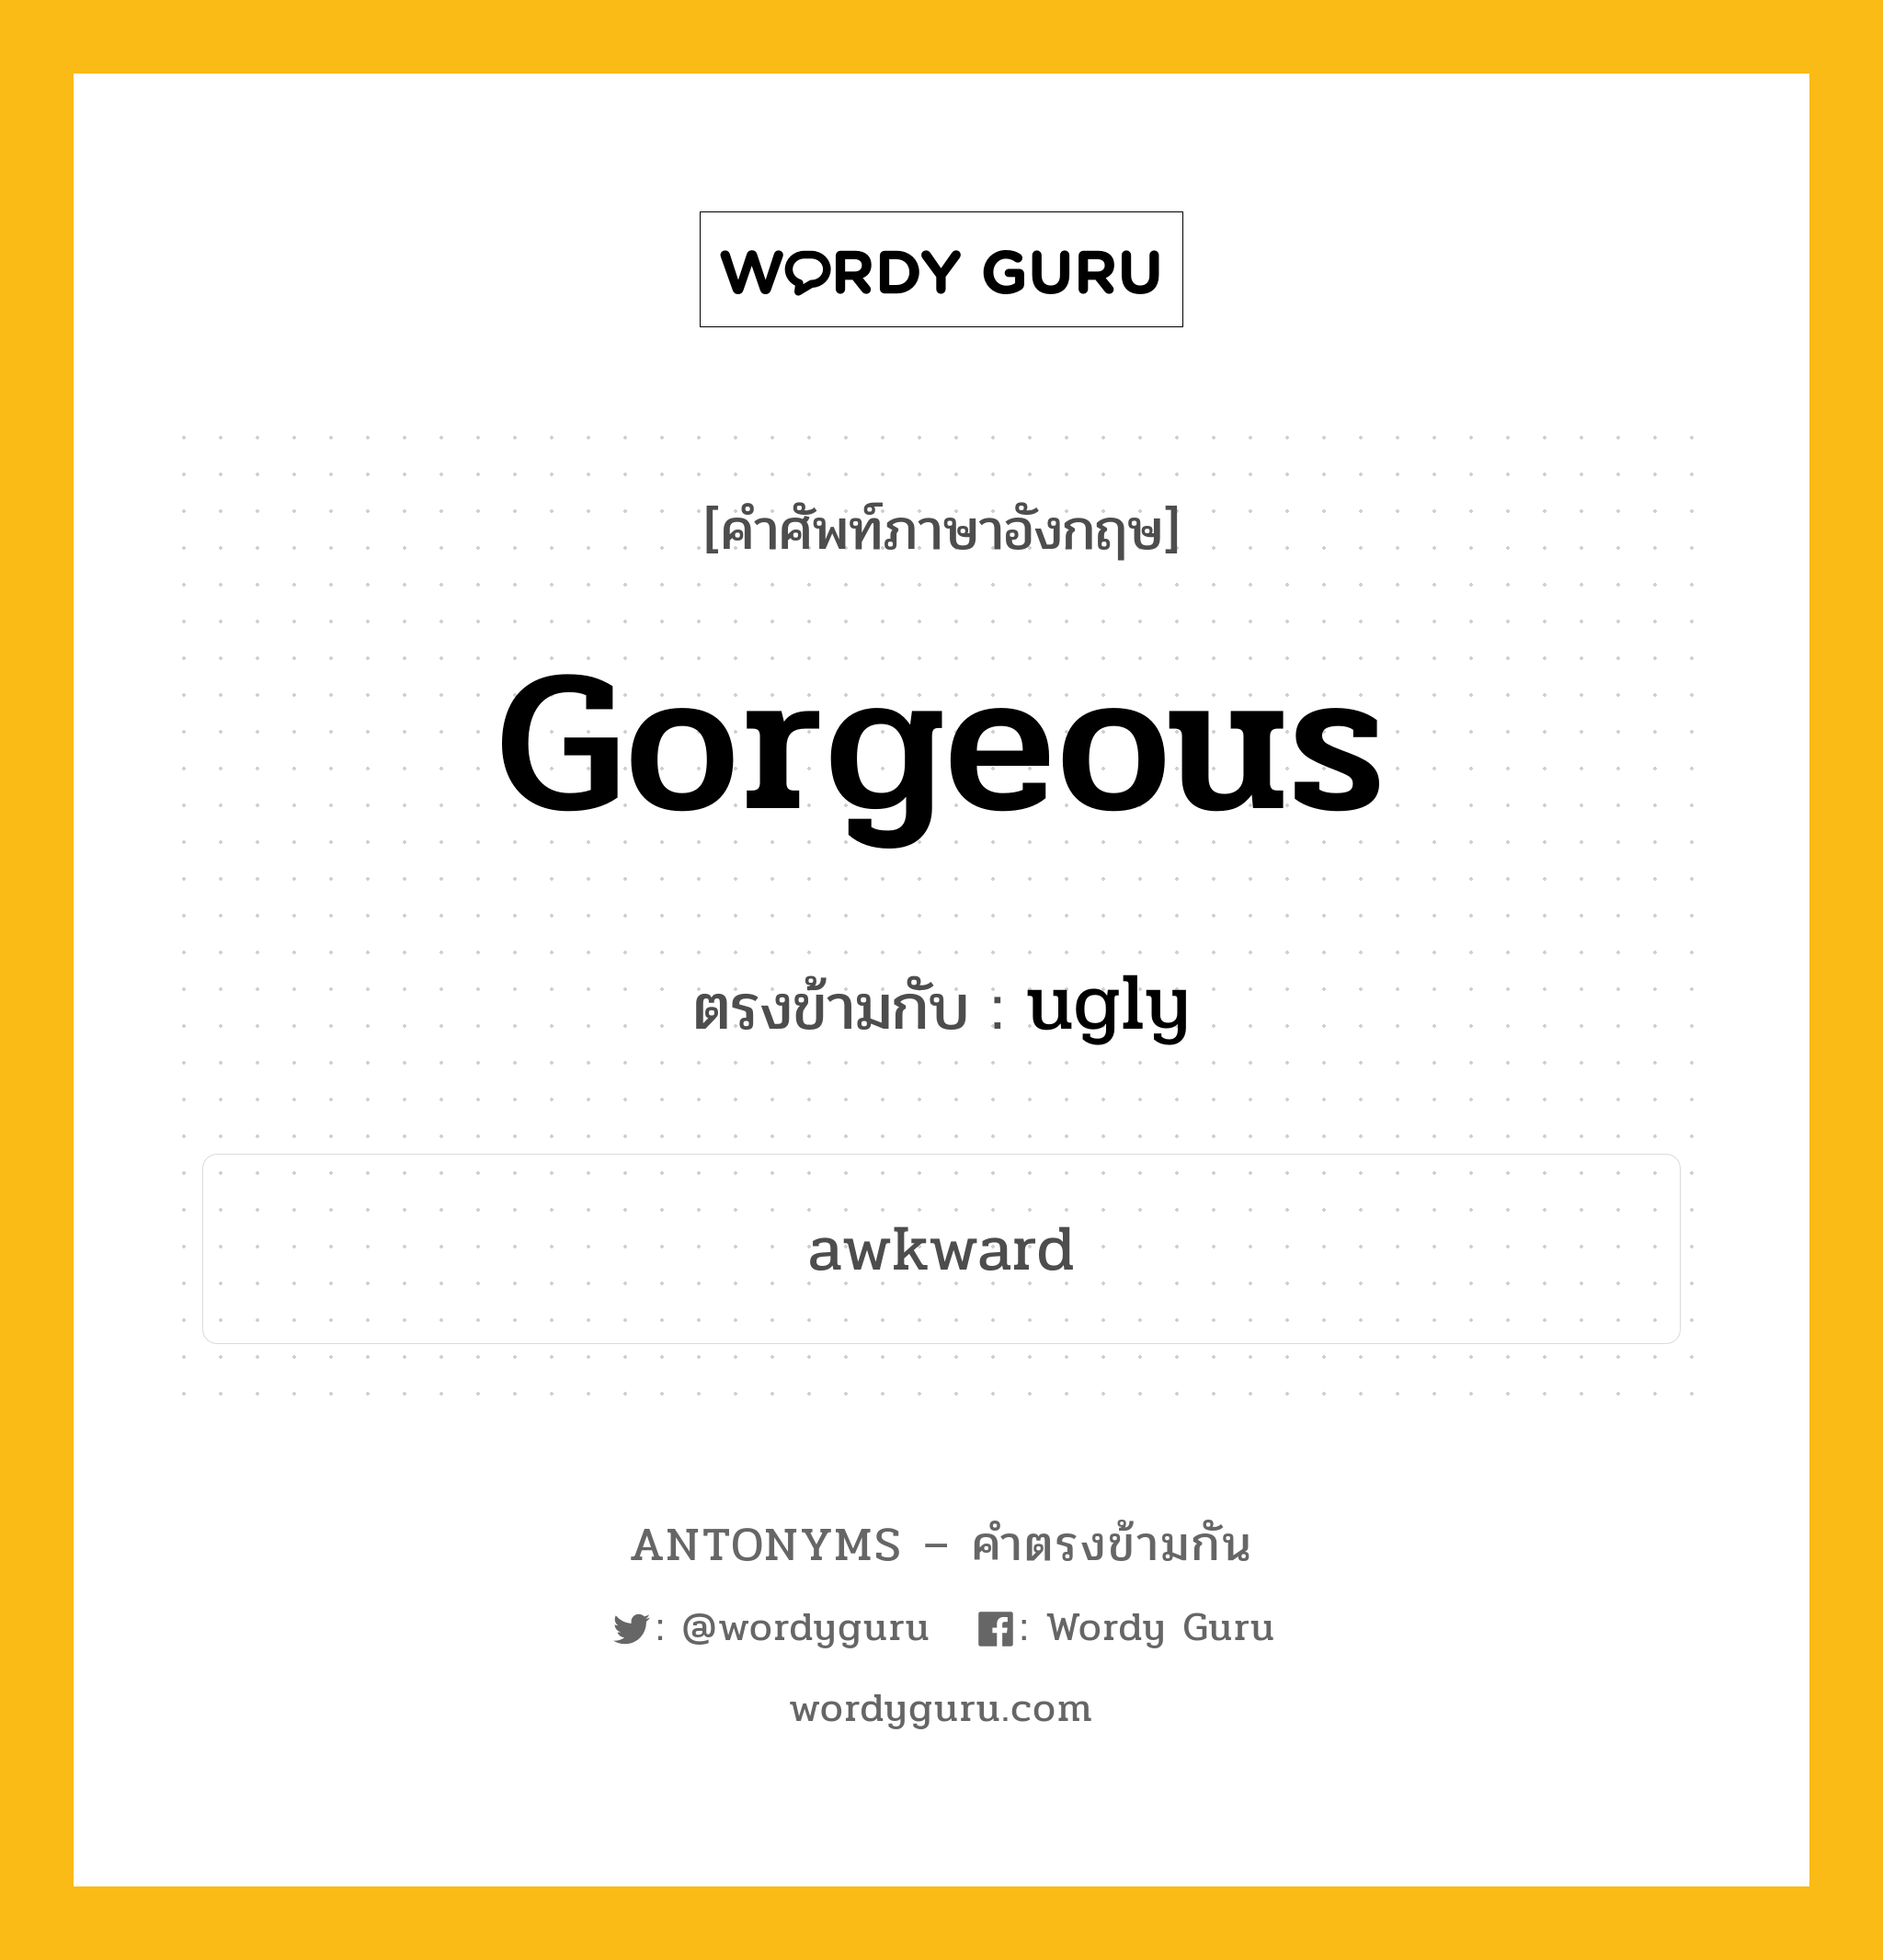 gorgeous เป็นคำตรงข้ามกับคำไหนบ้าง?, คำศัพท์ภาษาอังกฤษ gorgeous ตรงข้ามกับ ugly หมวด ugly